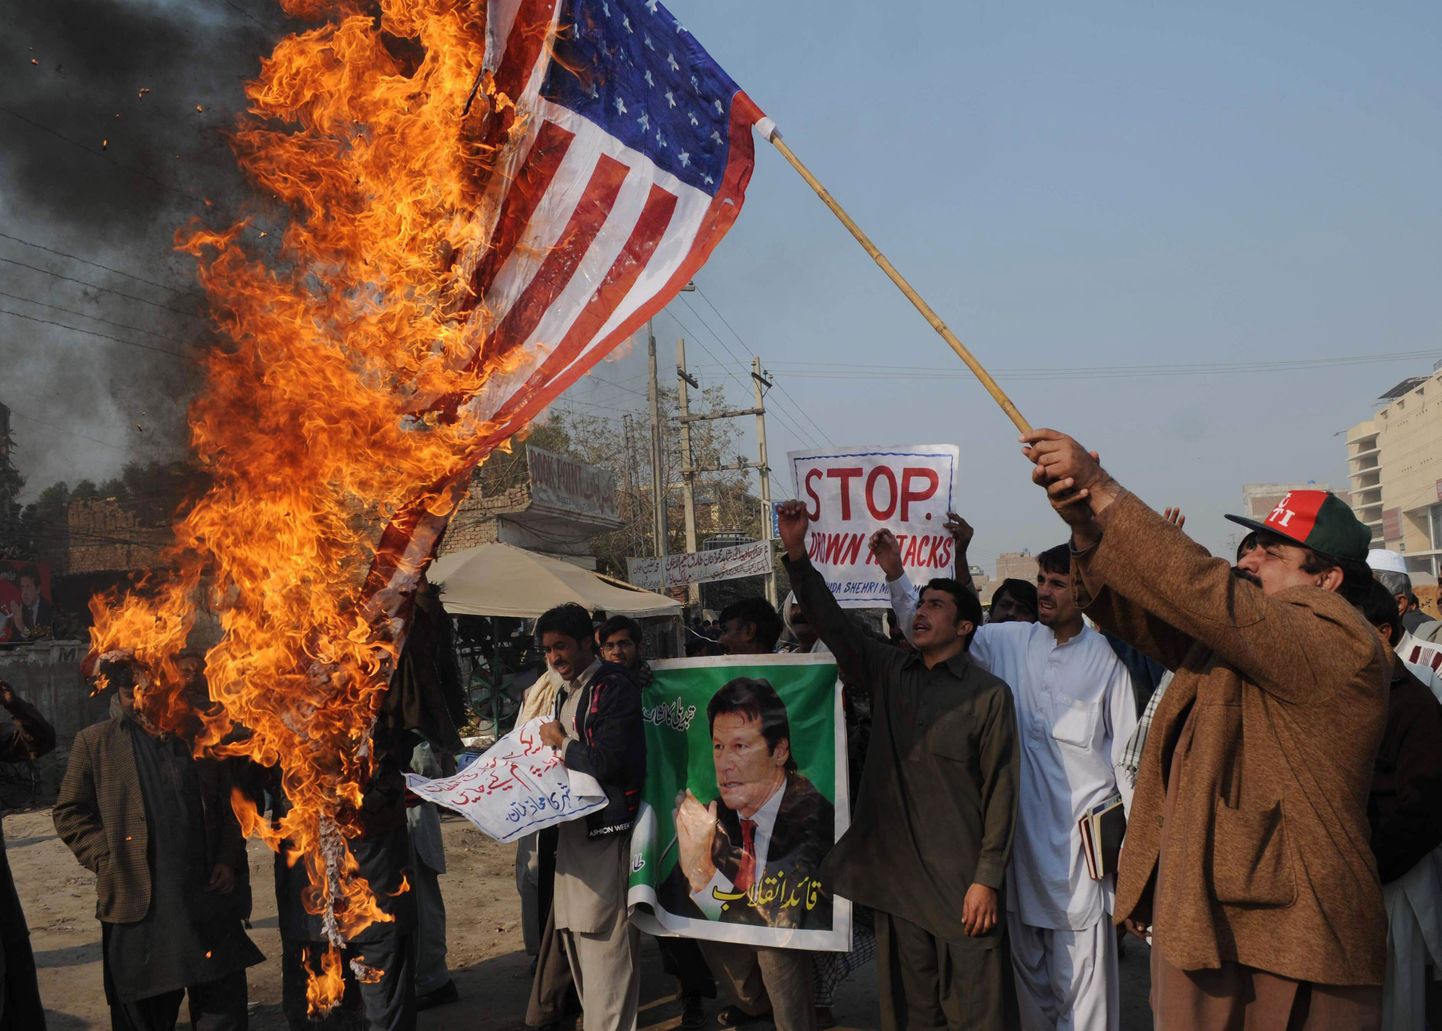 USA droonirünnakute vastane meeleavaldus Pakistanis Pandžabi provintsis.